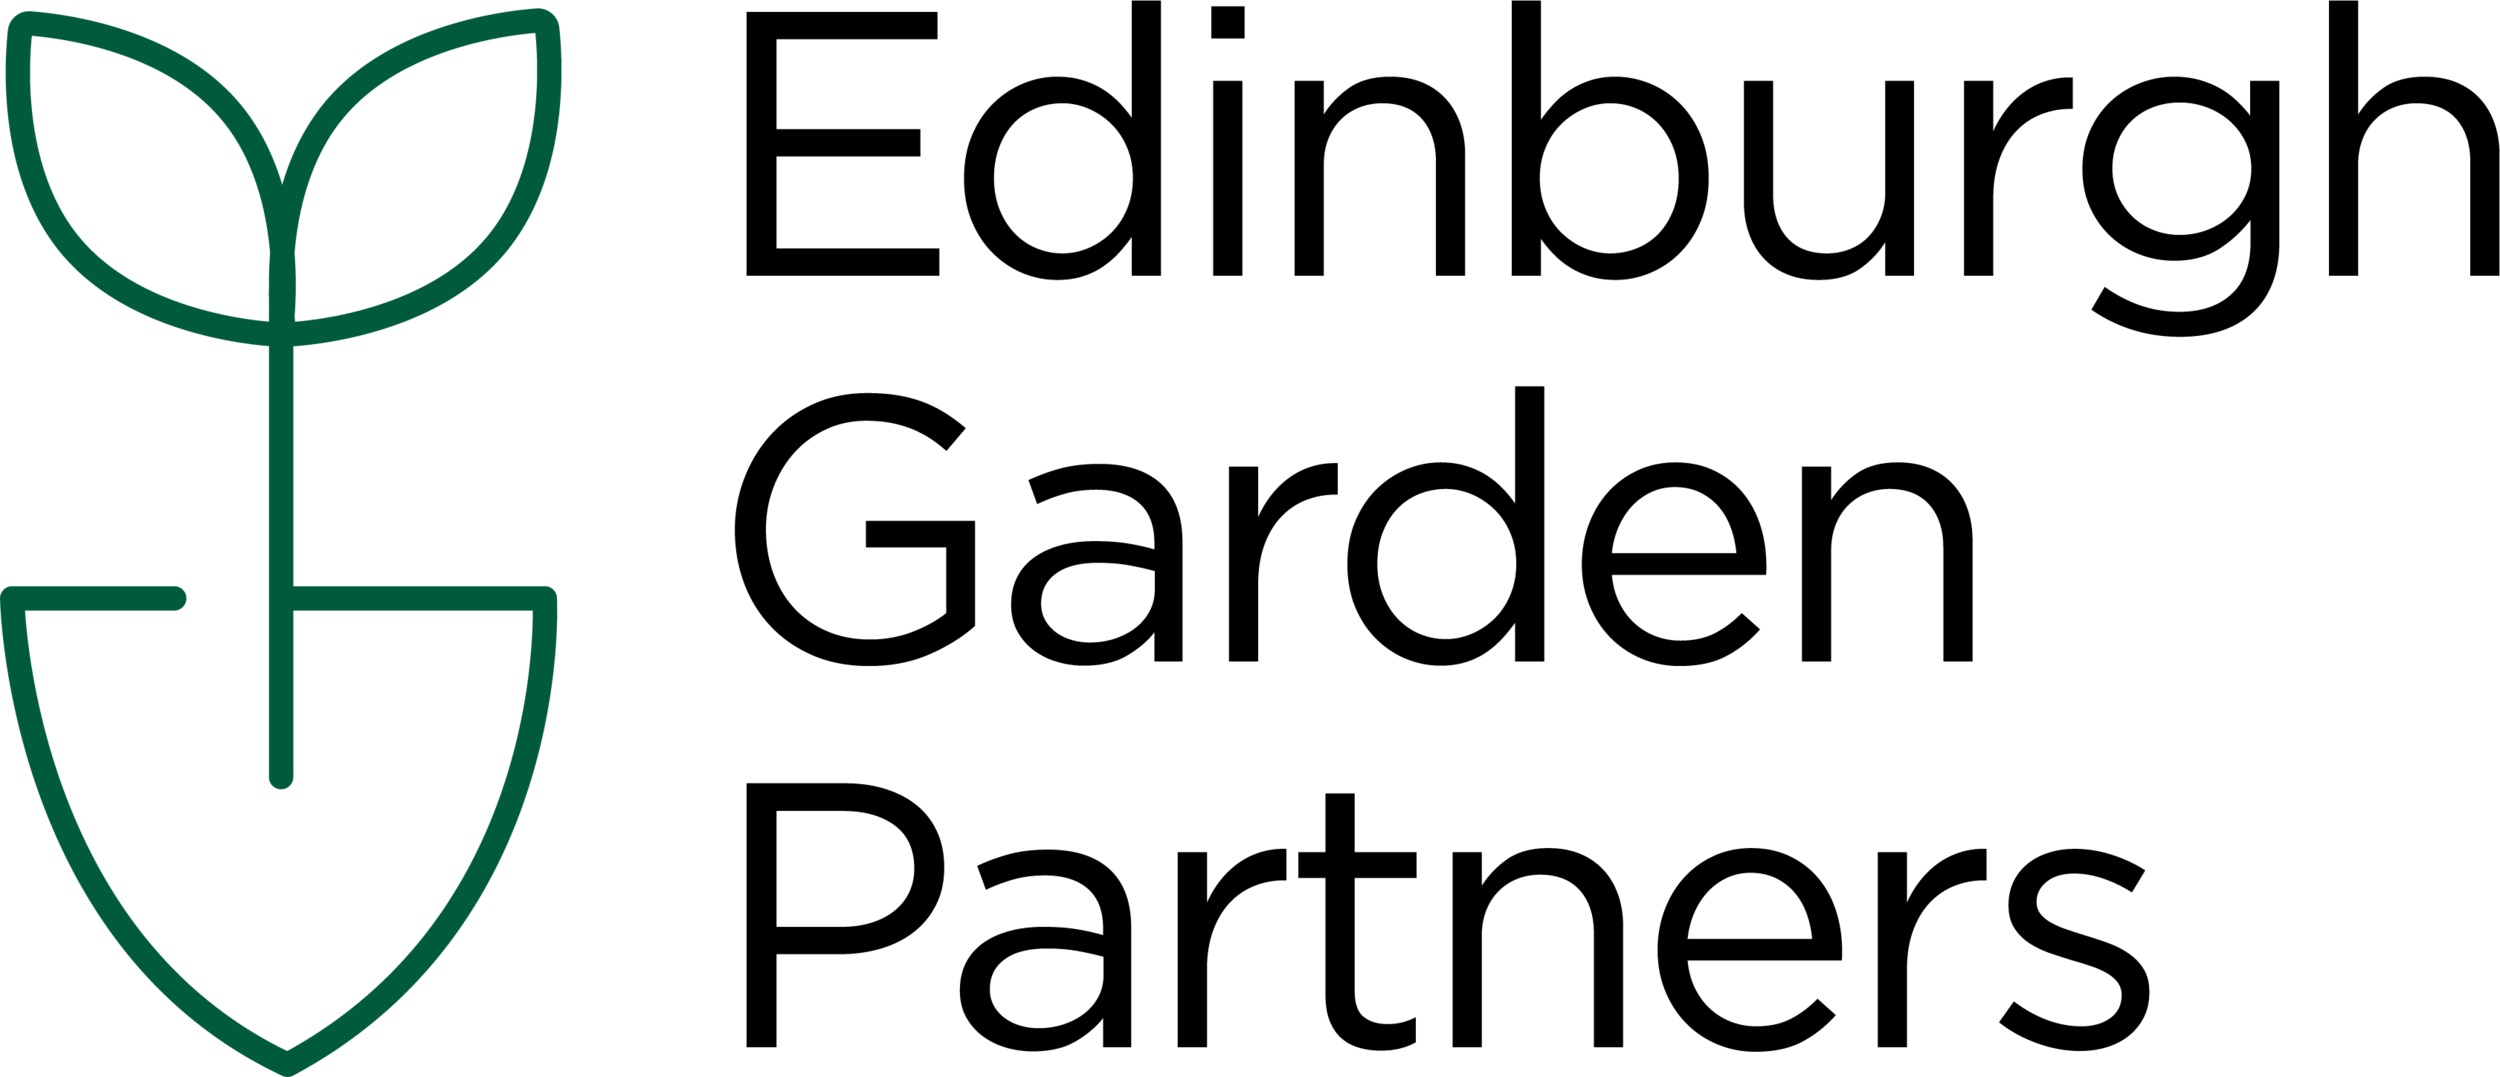 Edinburgh Garden Partners